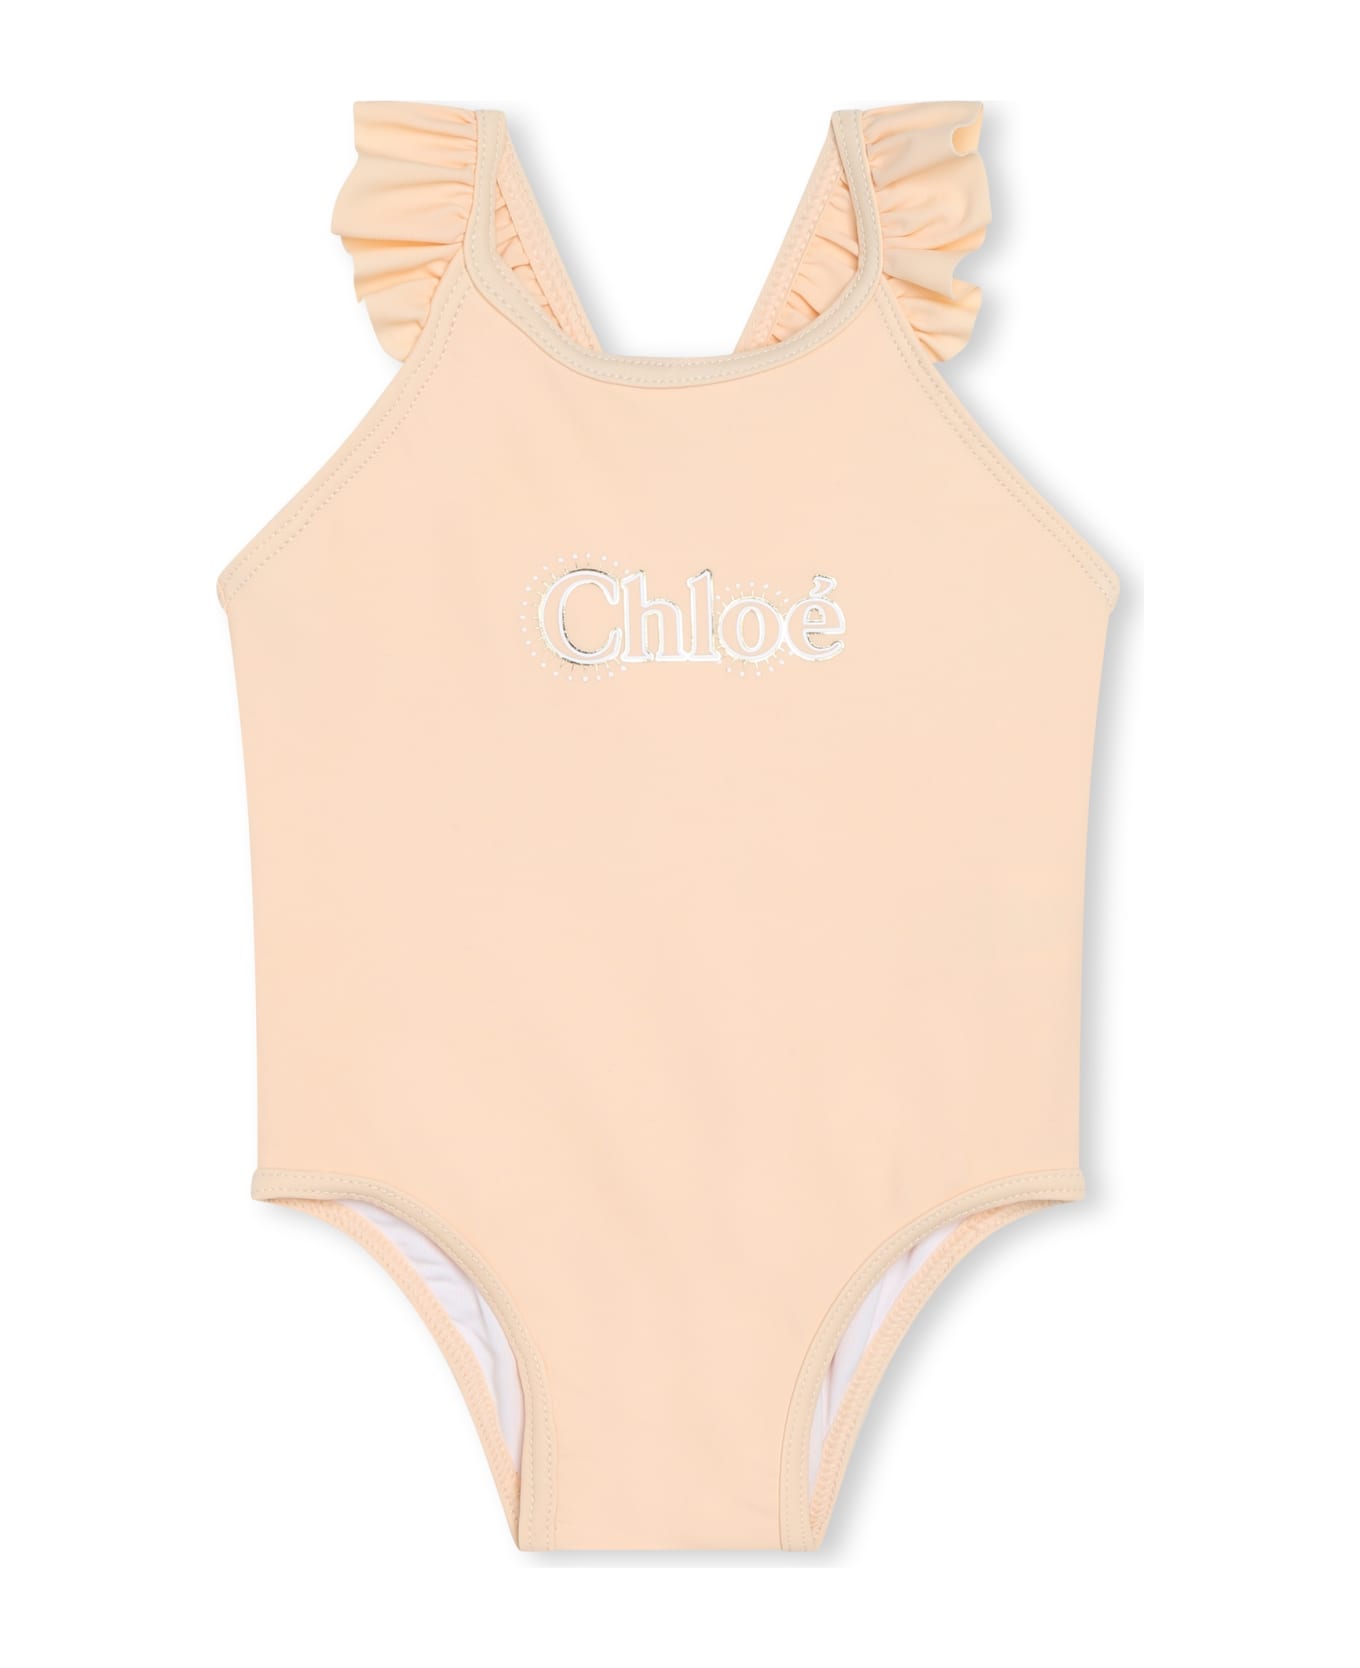 Chloé Costume Intero Con Stampa - Pink 水着